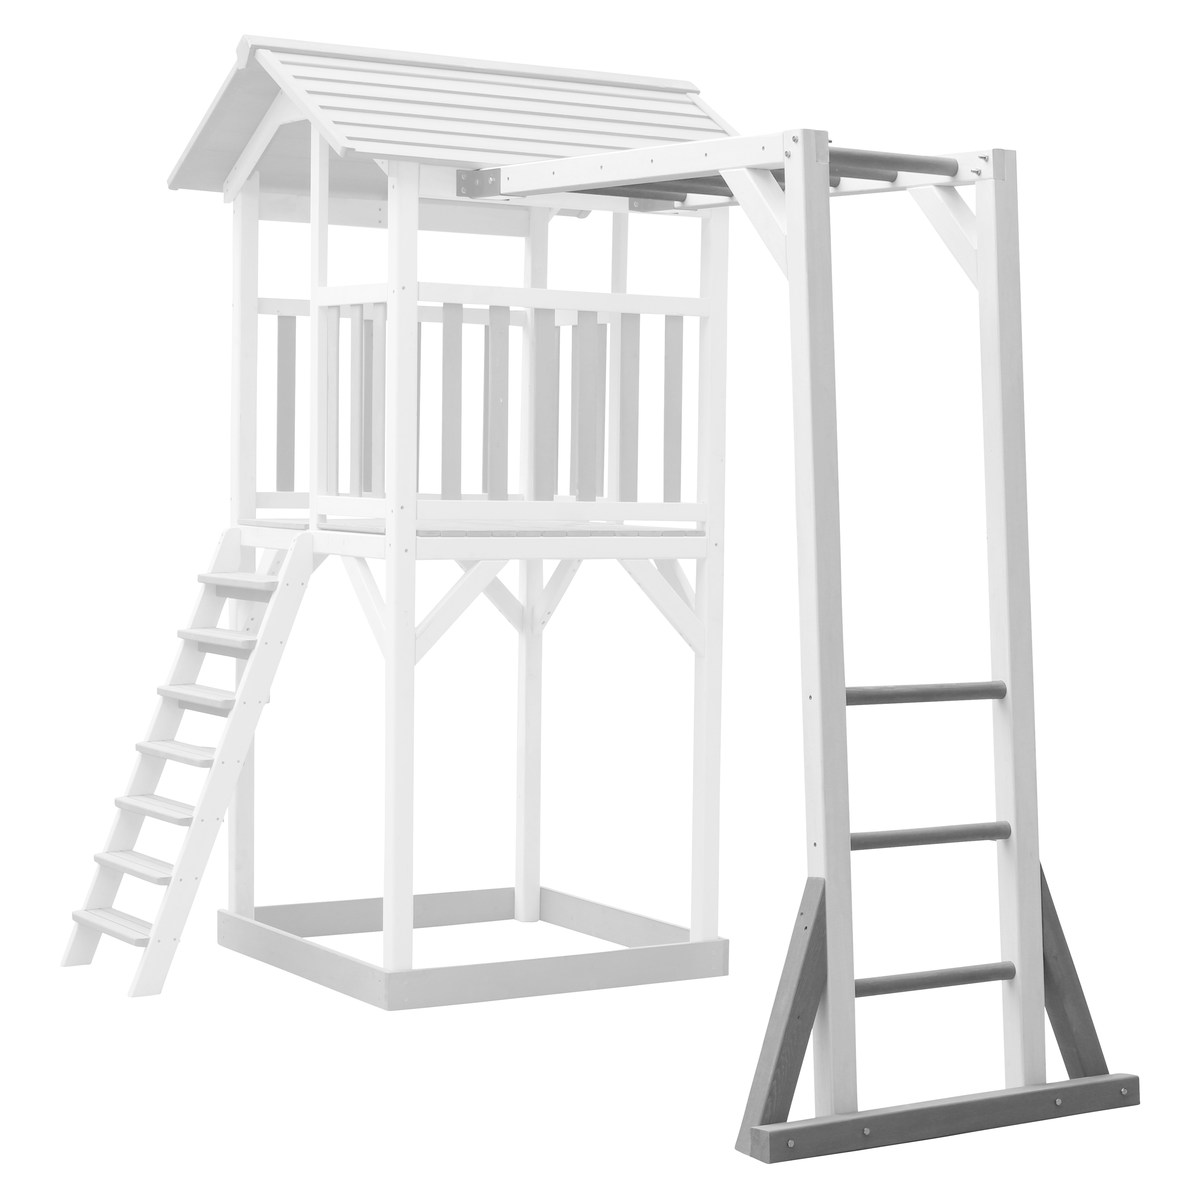 Klettergerüst für Beach Tower Spielturm, grau/weiß